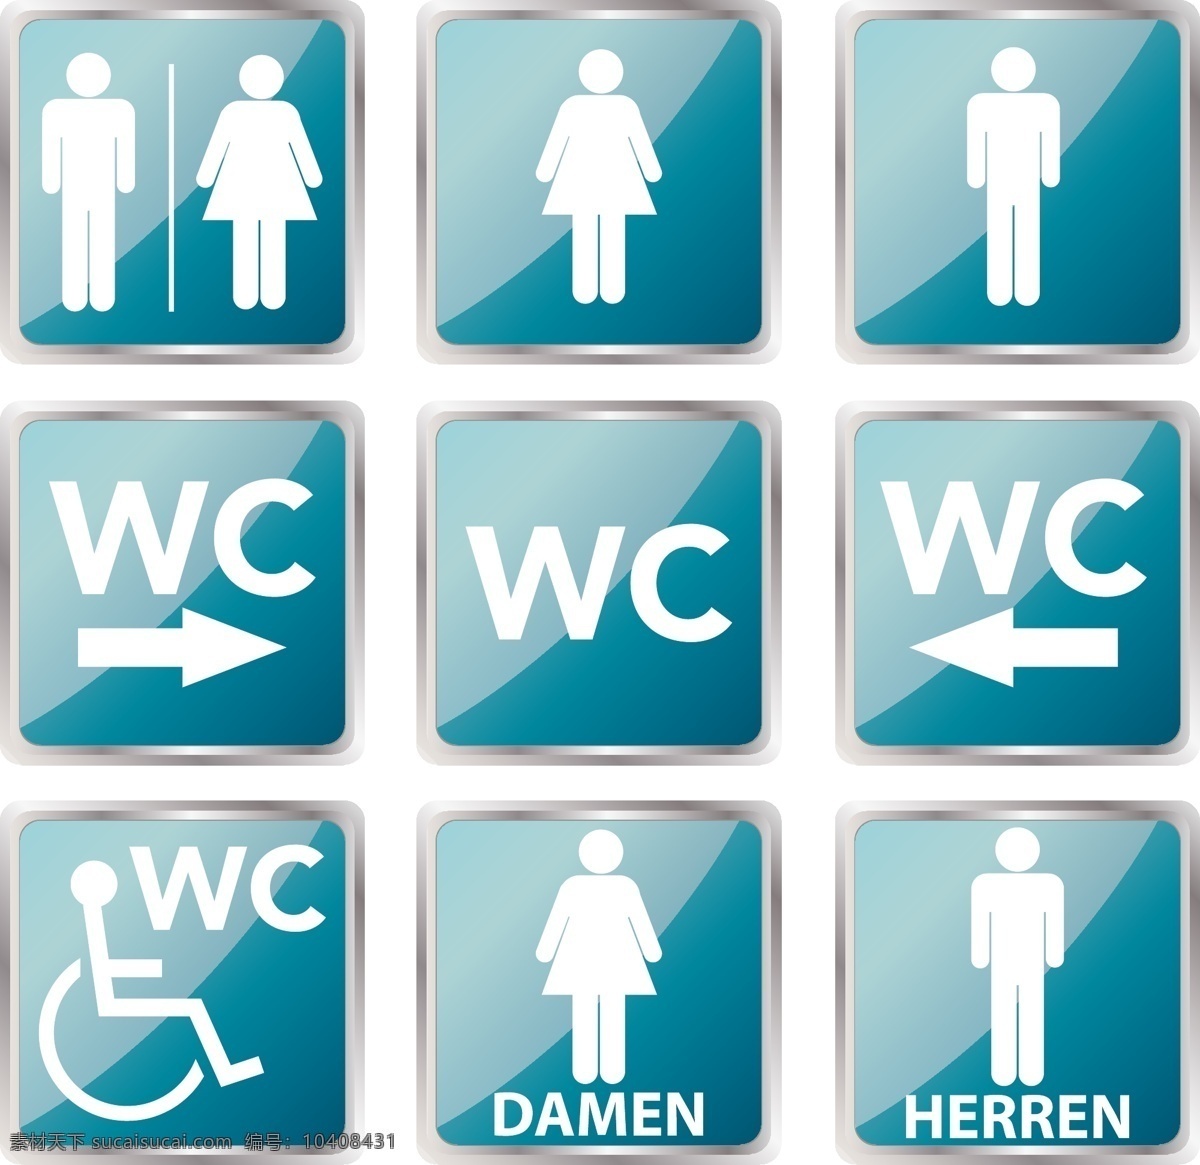 wc 厕所 标志 矢量 标志设计 厕所标志 模板 设计稿 素材元素 源文件 指示标志 男厕所 女厕所 矢量图